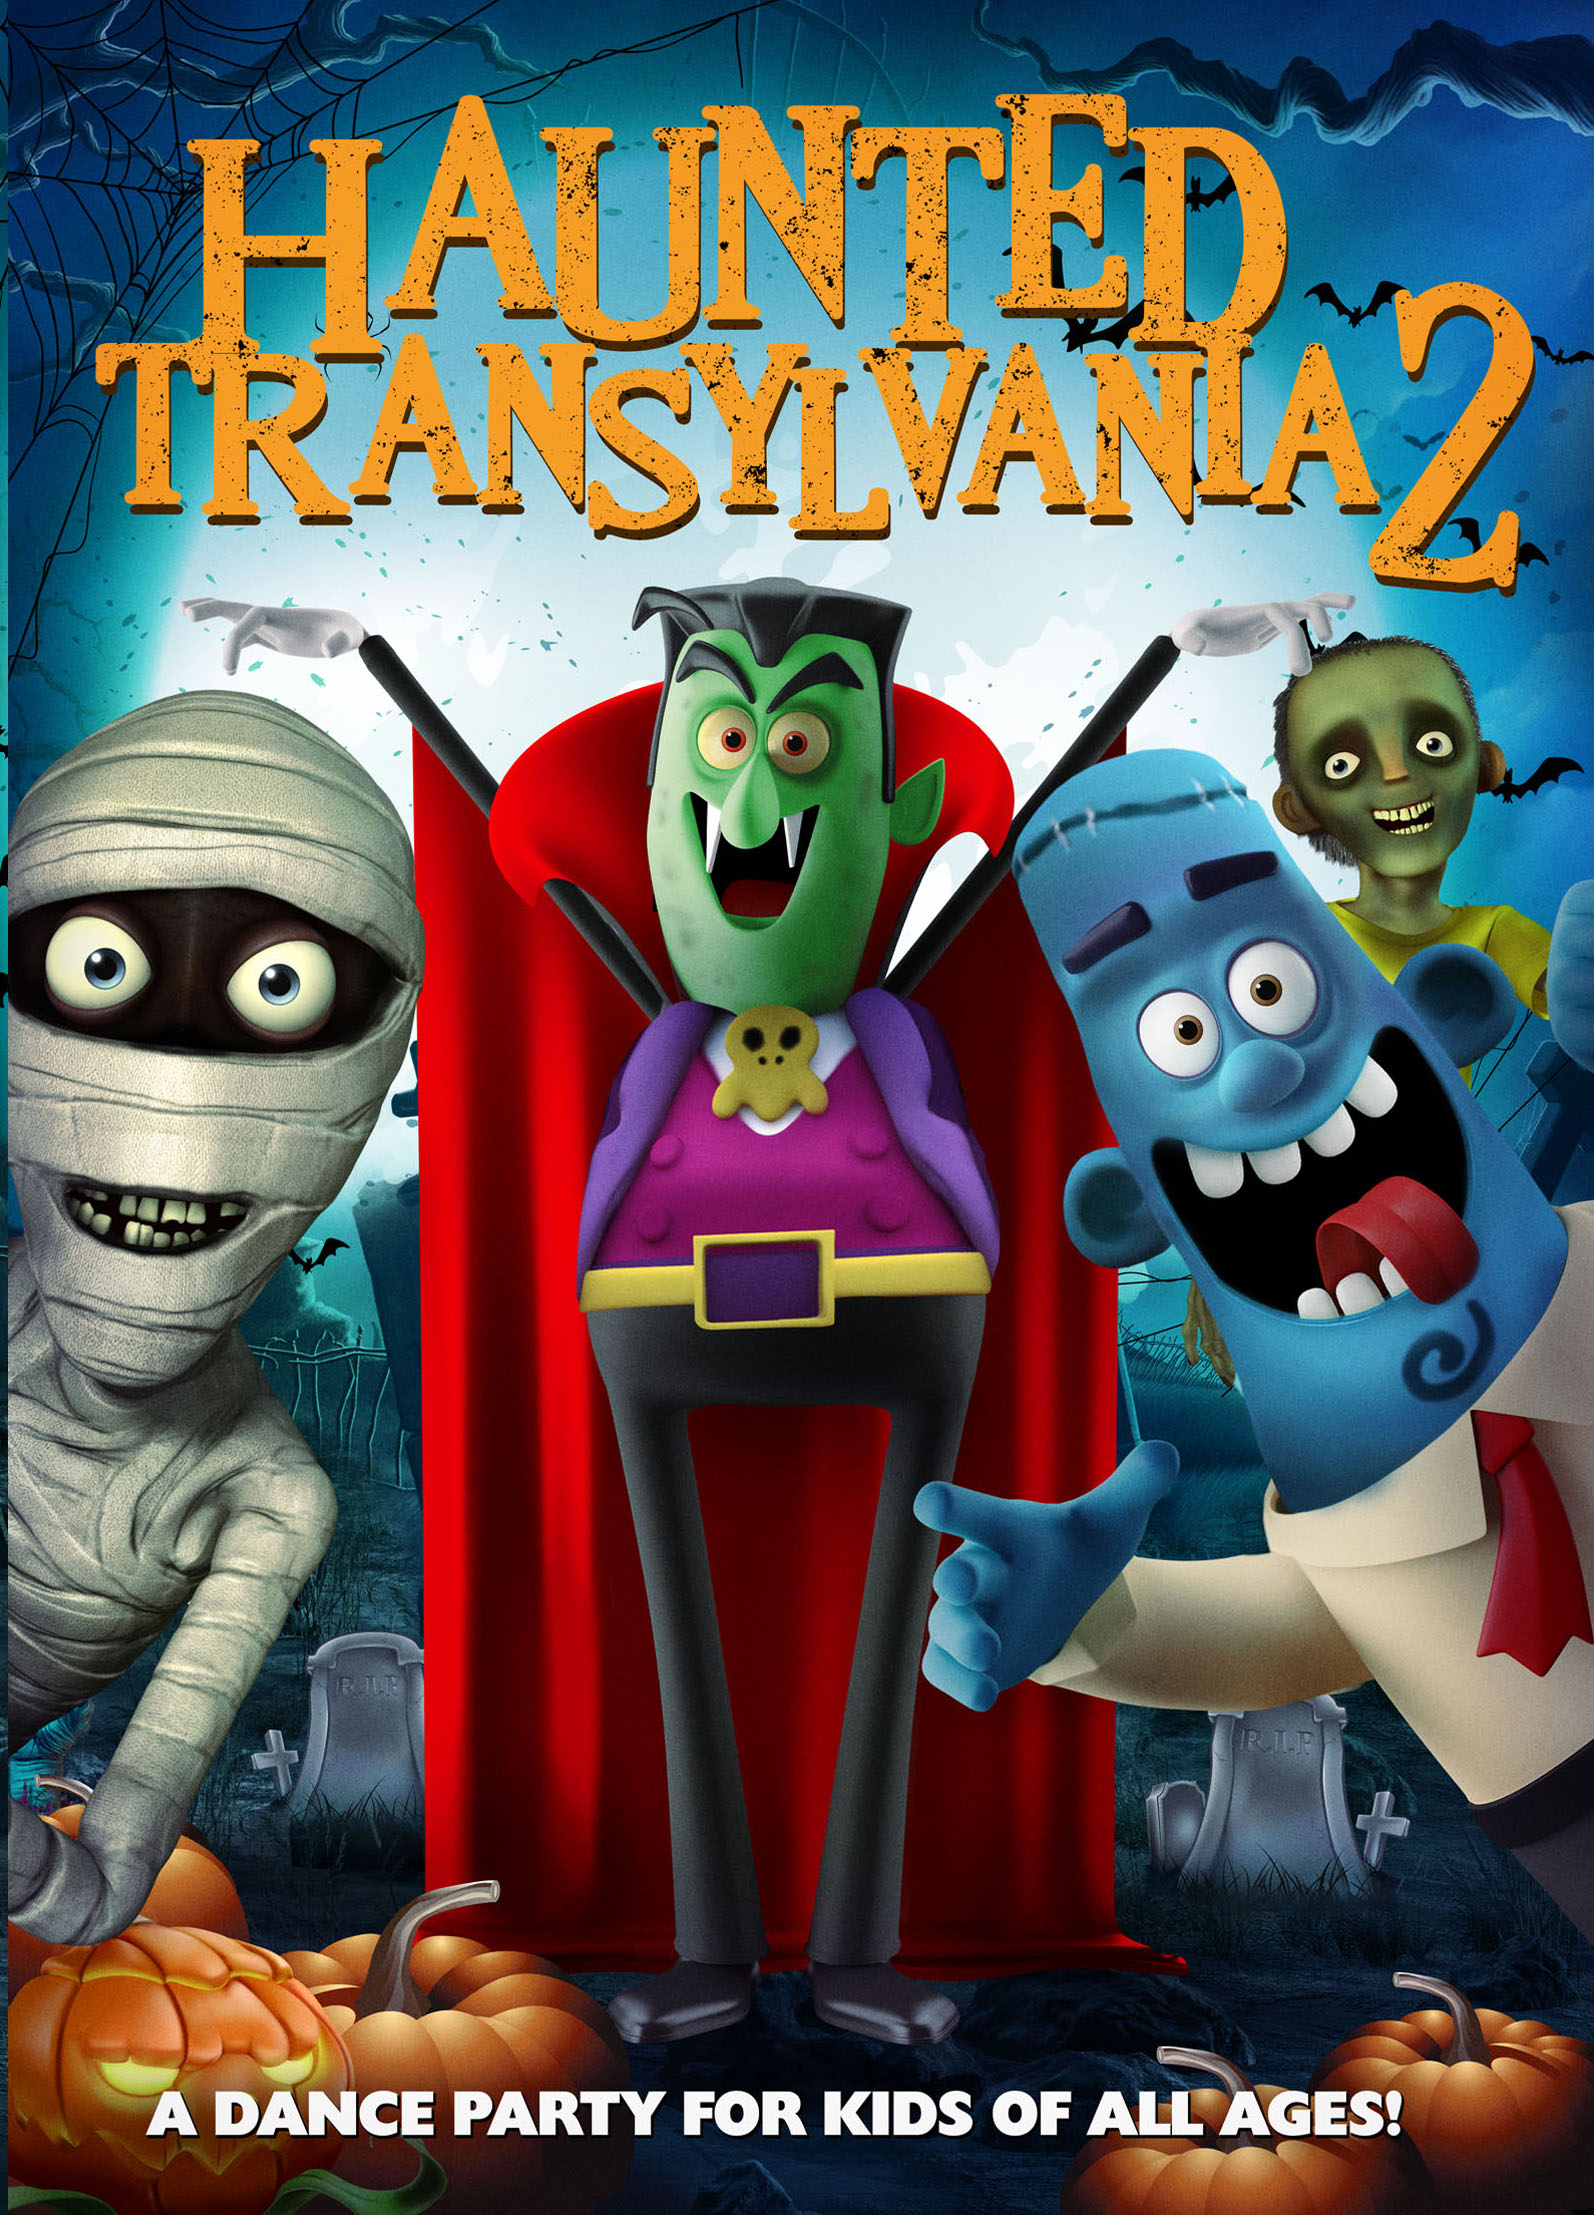 Nonton film Haunted Transylvania 2 layarkaca21 indoxx1 ganool online streaming terbaru